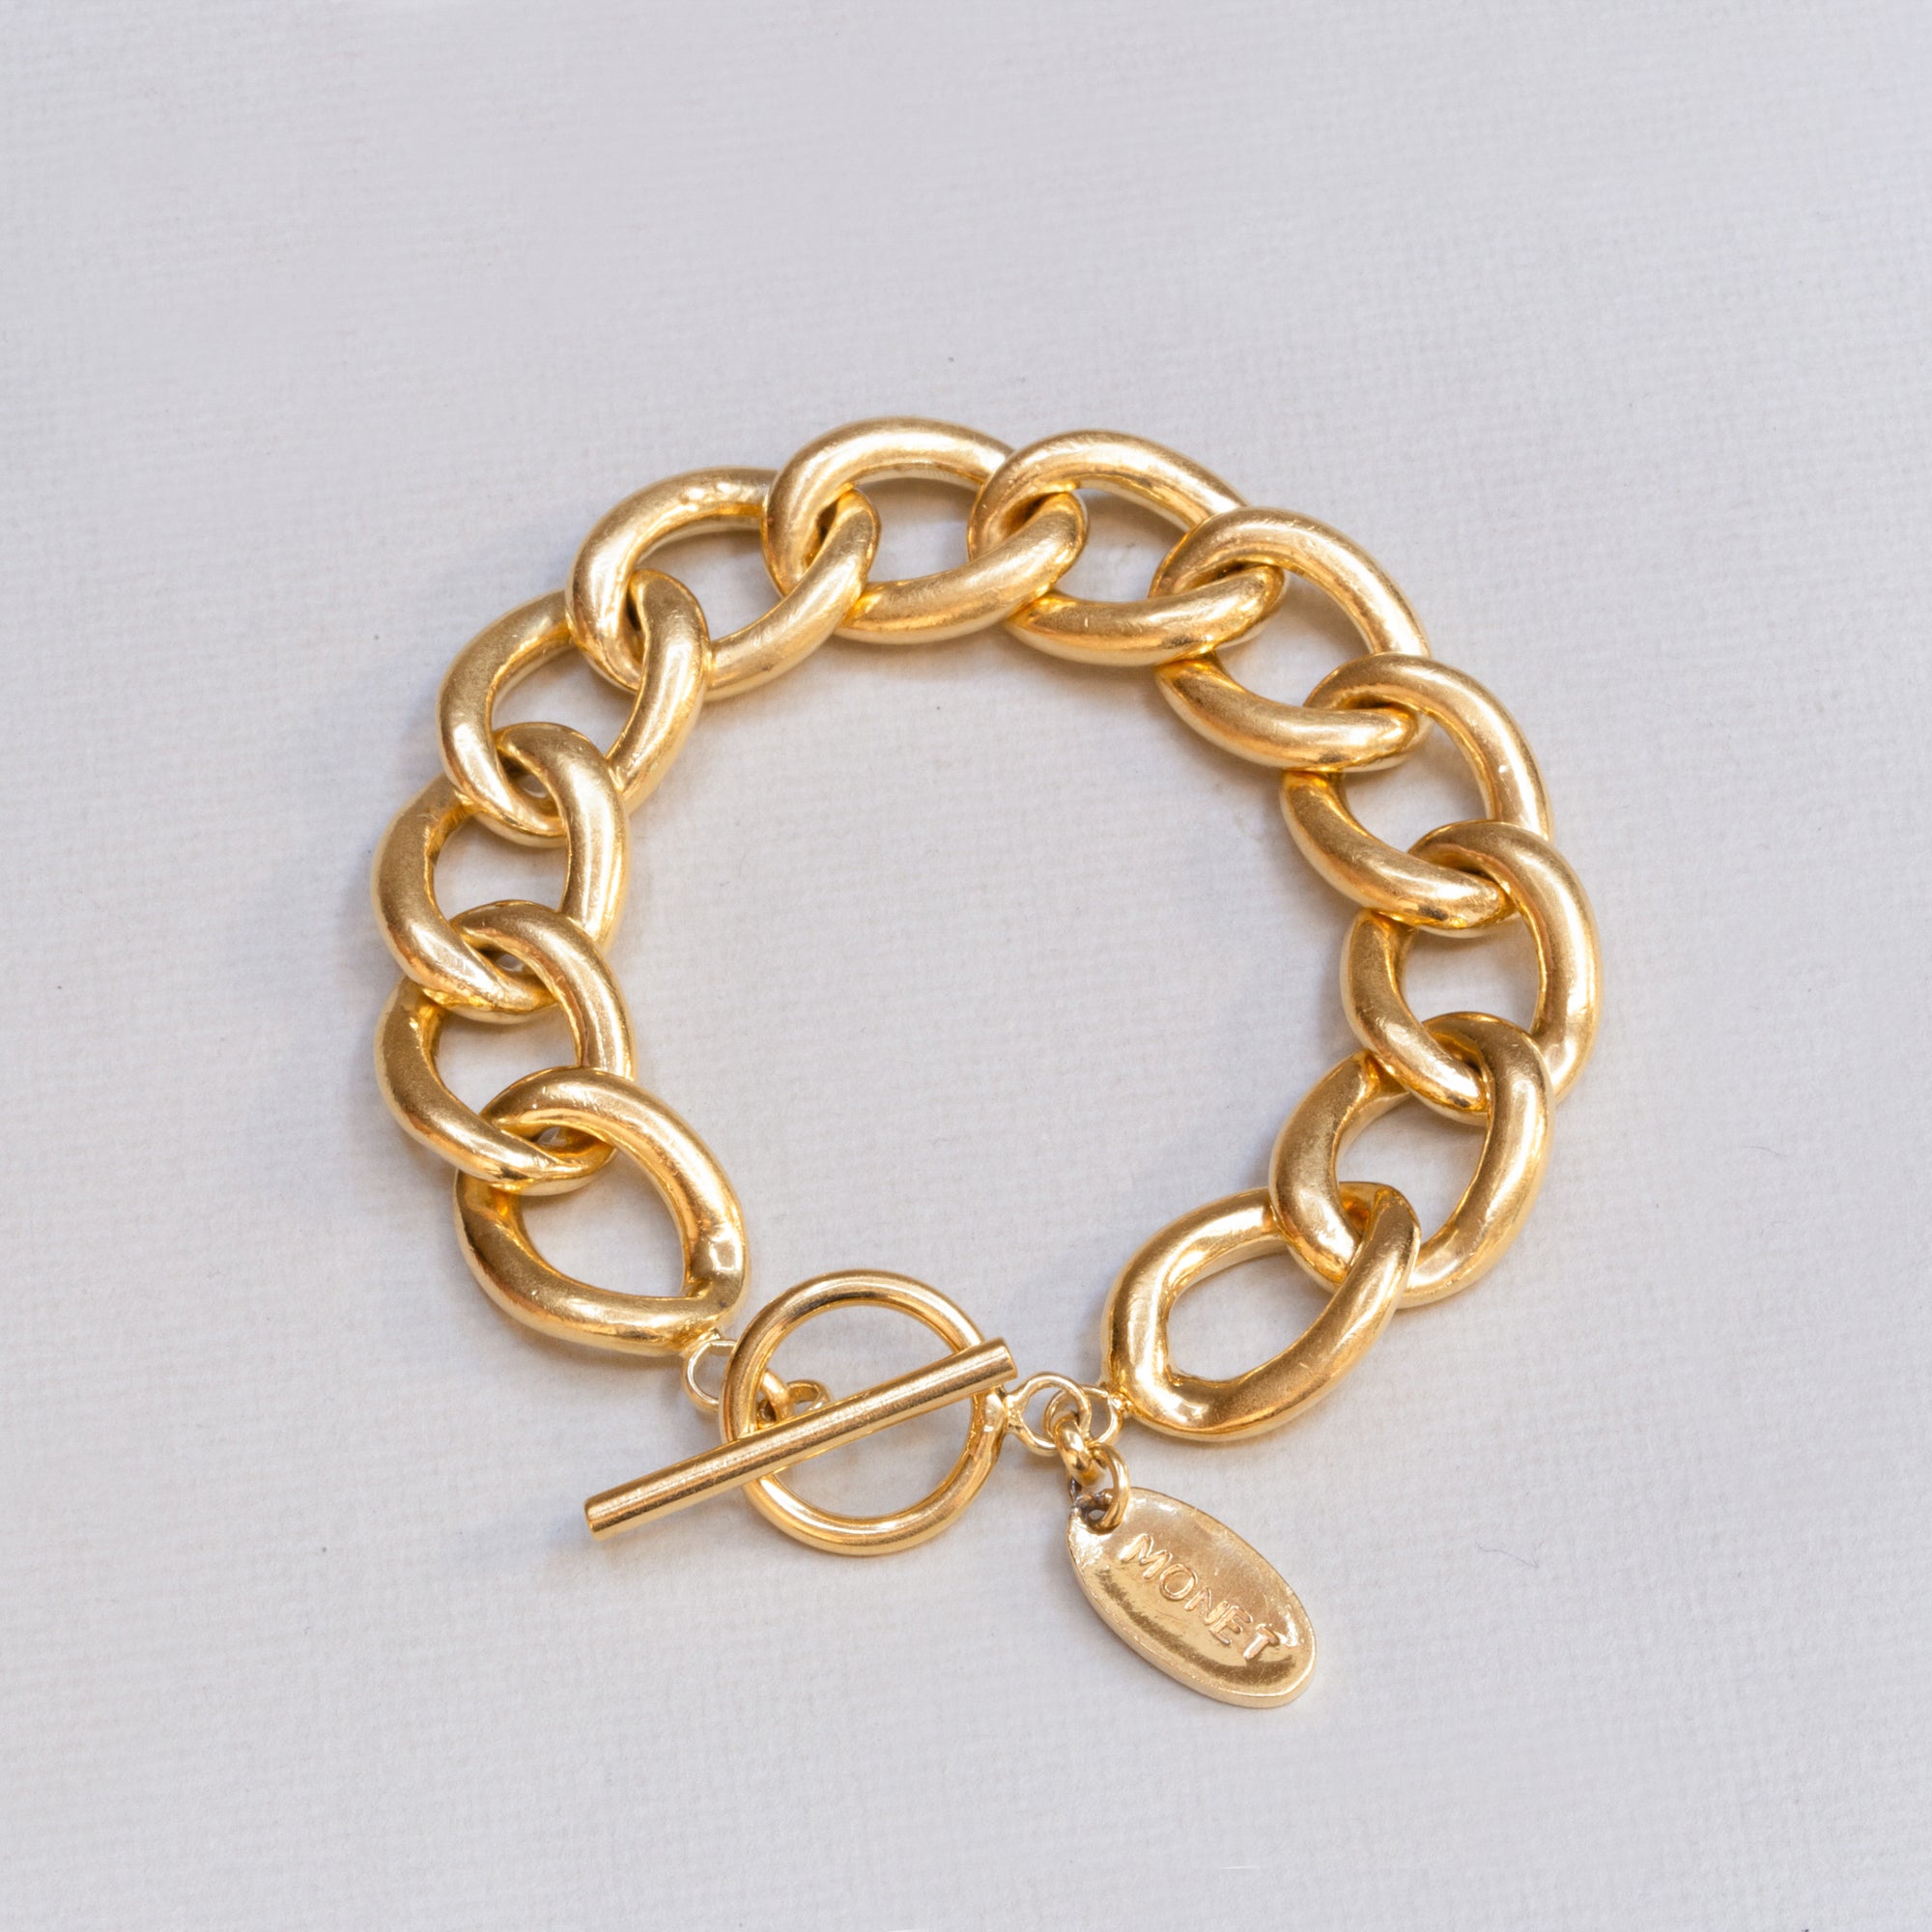 Vintage Monet Gold Chain Bracelet